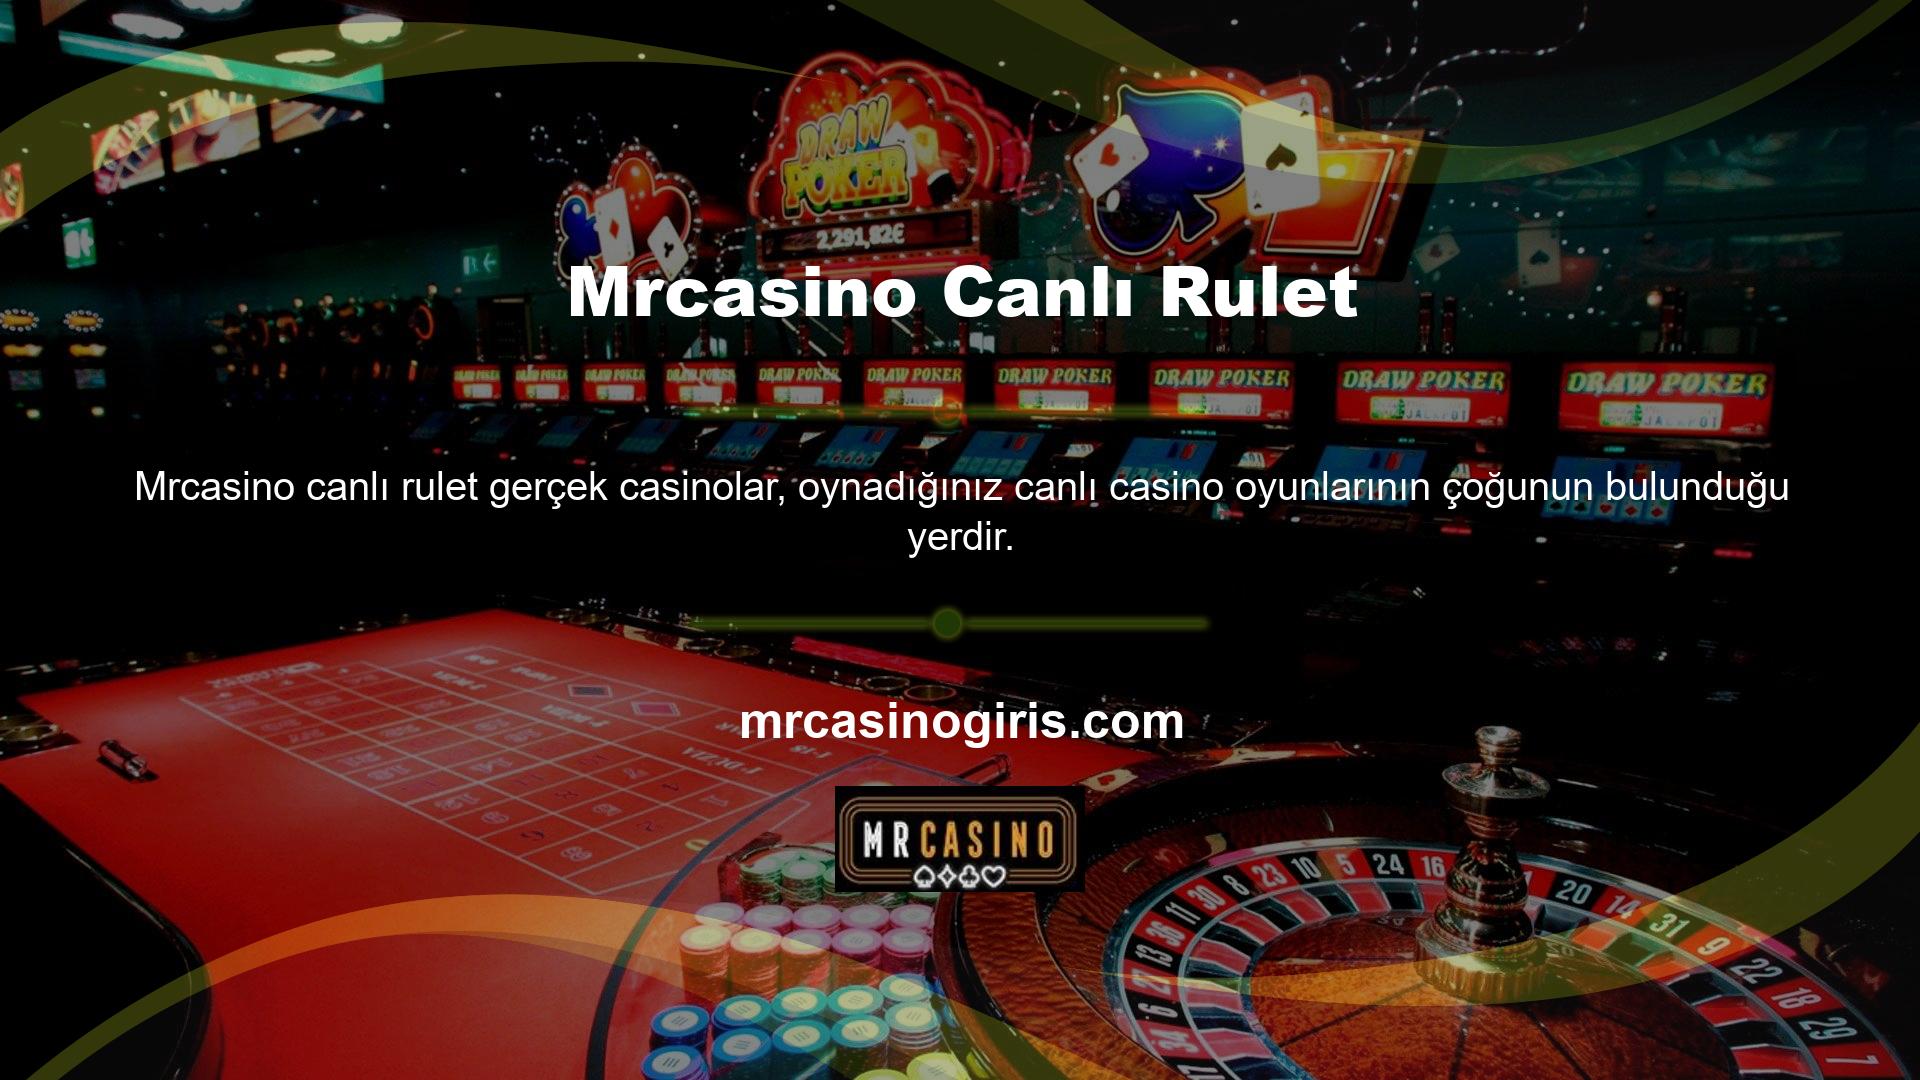 Mrcasino canlı rulet oyunlarıyla, bir Casinoda gece veya gündüz istediğiniz zaman endişelenmeden aksiyona bahis oynayabilirsiniz